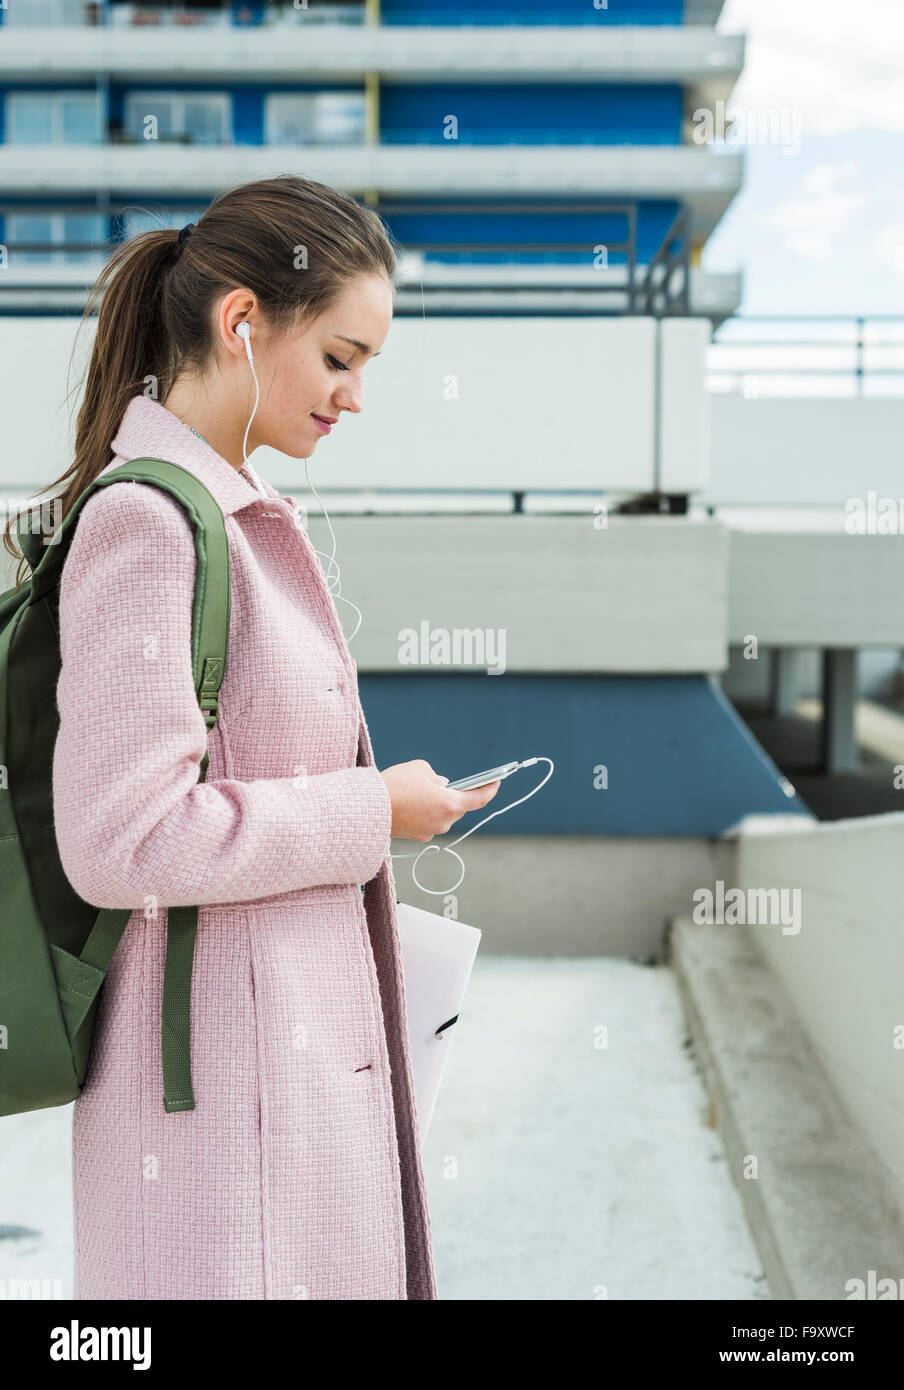 Jeune femme avec des écouteurs-looking at cell phone Banque D'Images